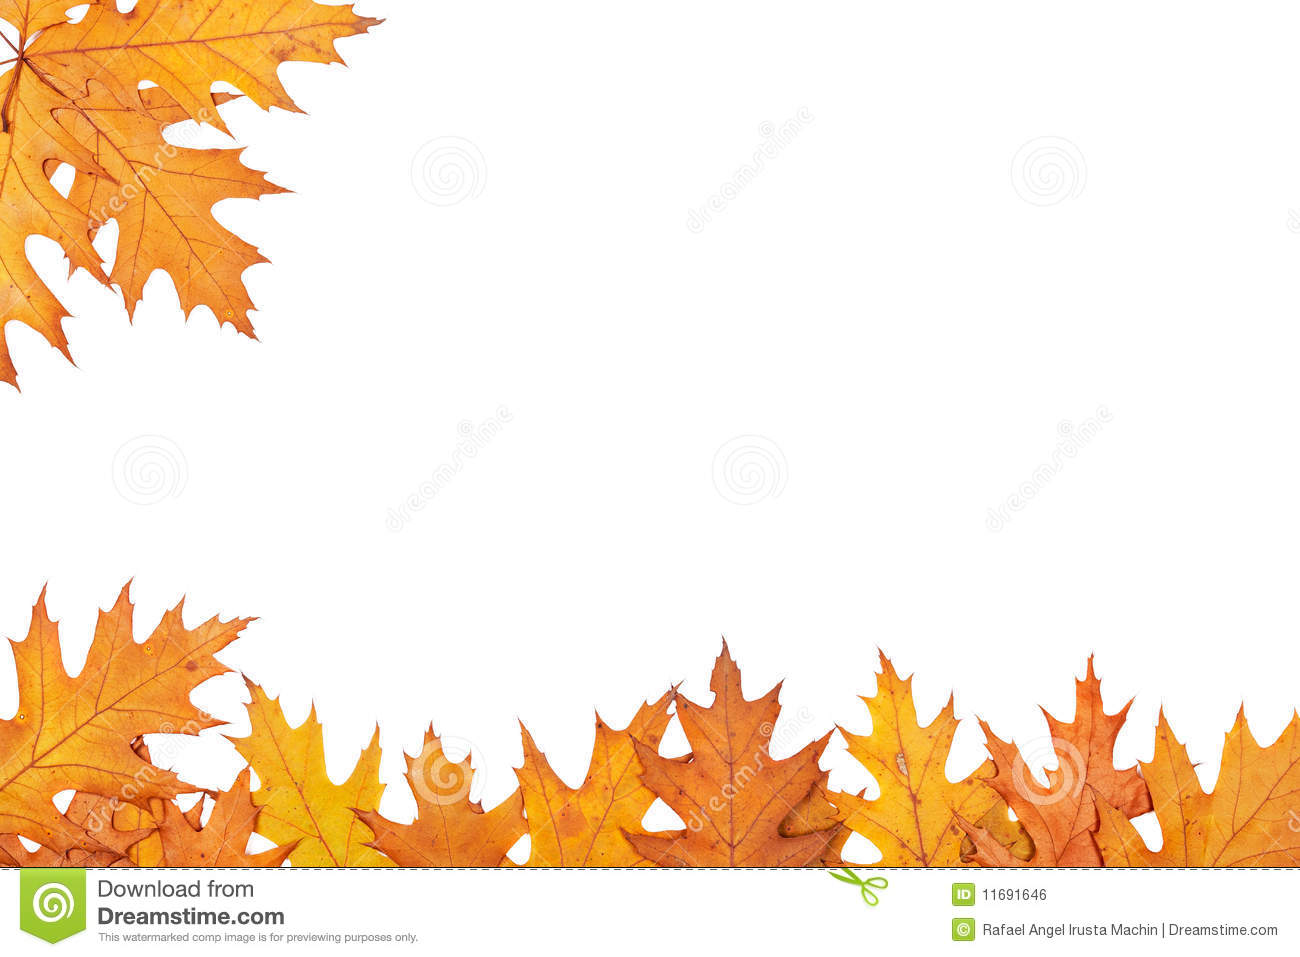 ... Autumn border - Illustrat